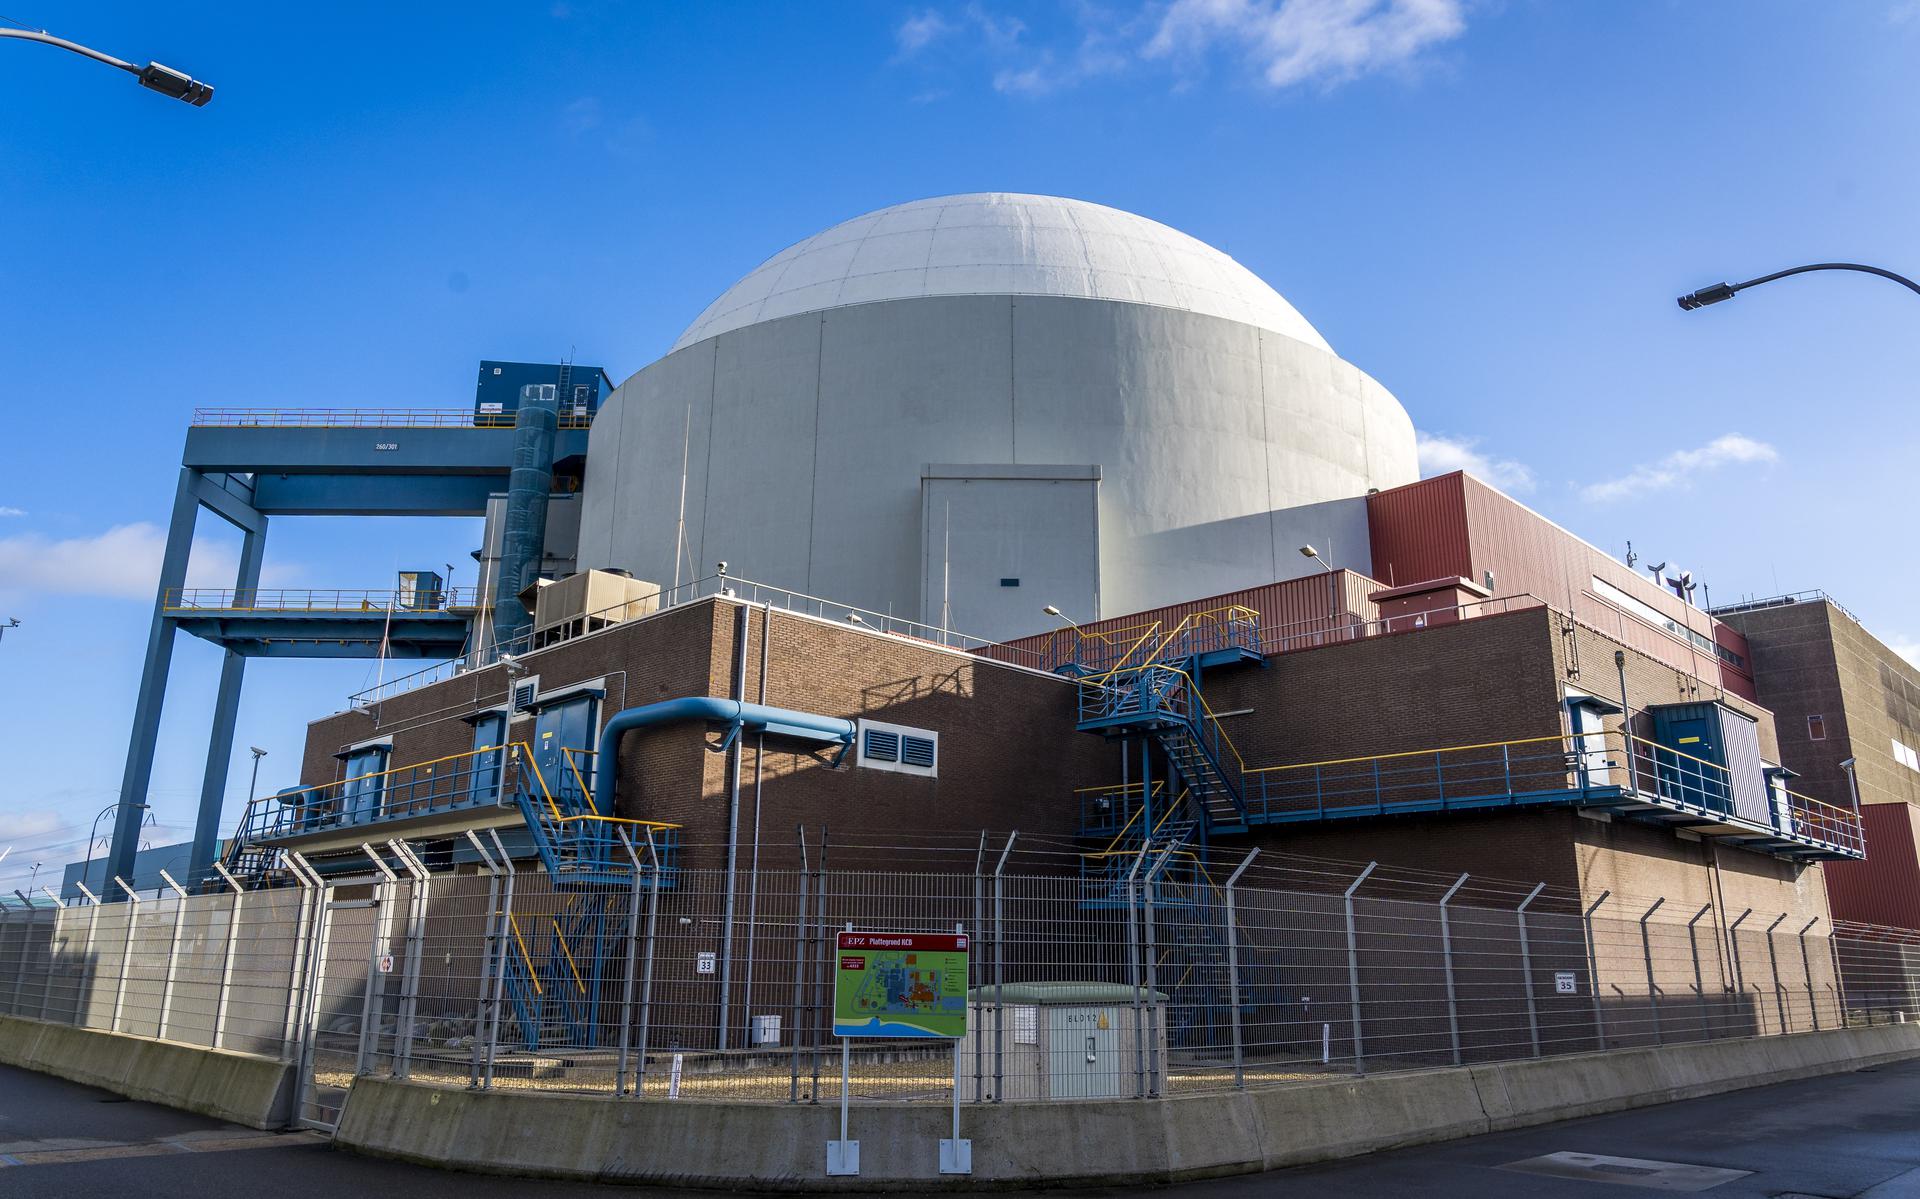 Die Lagerung von Atommüll ist und bleibt in Groningen ein Tabu, sagt die Abgeordnete Susan Top.  „Auf keinen Fall, klarer kann ich es nicht sagen“